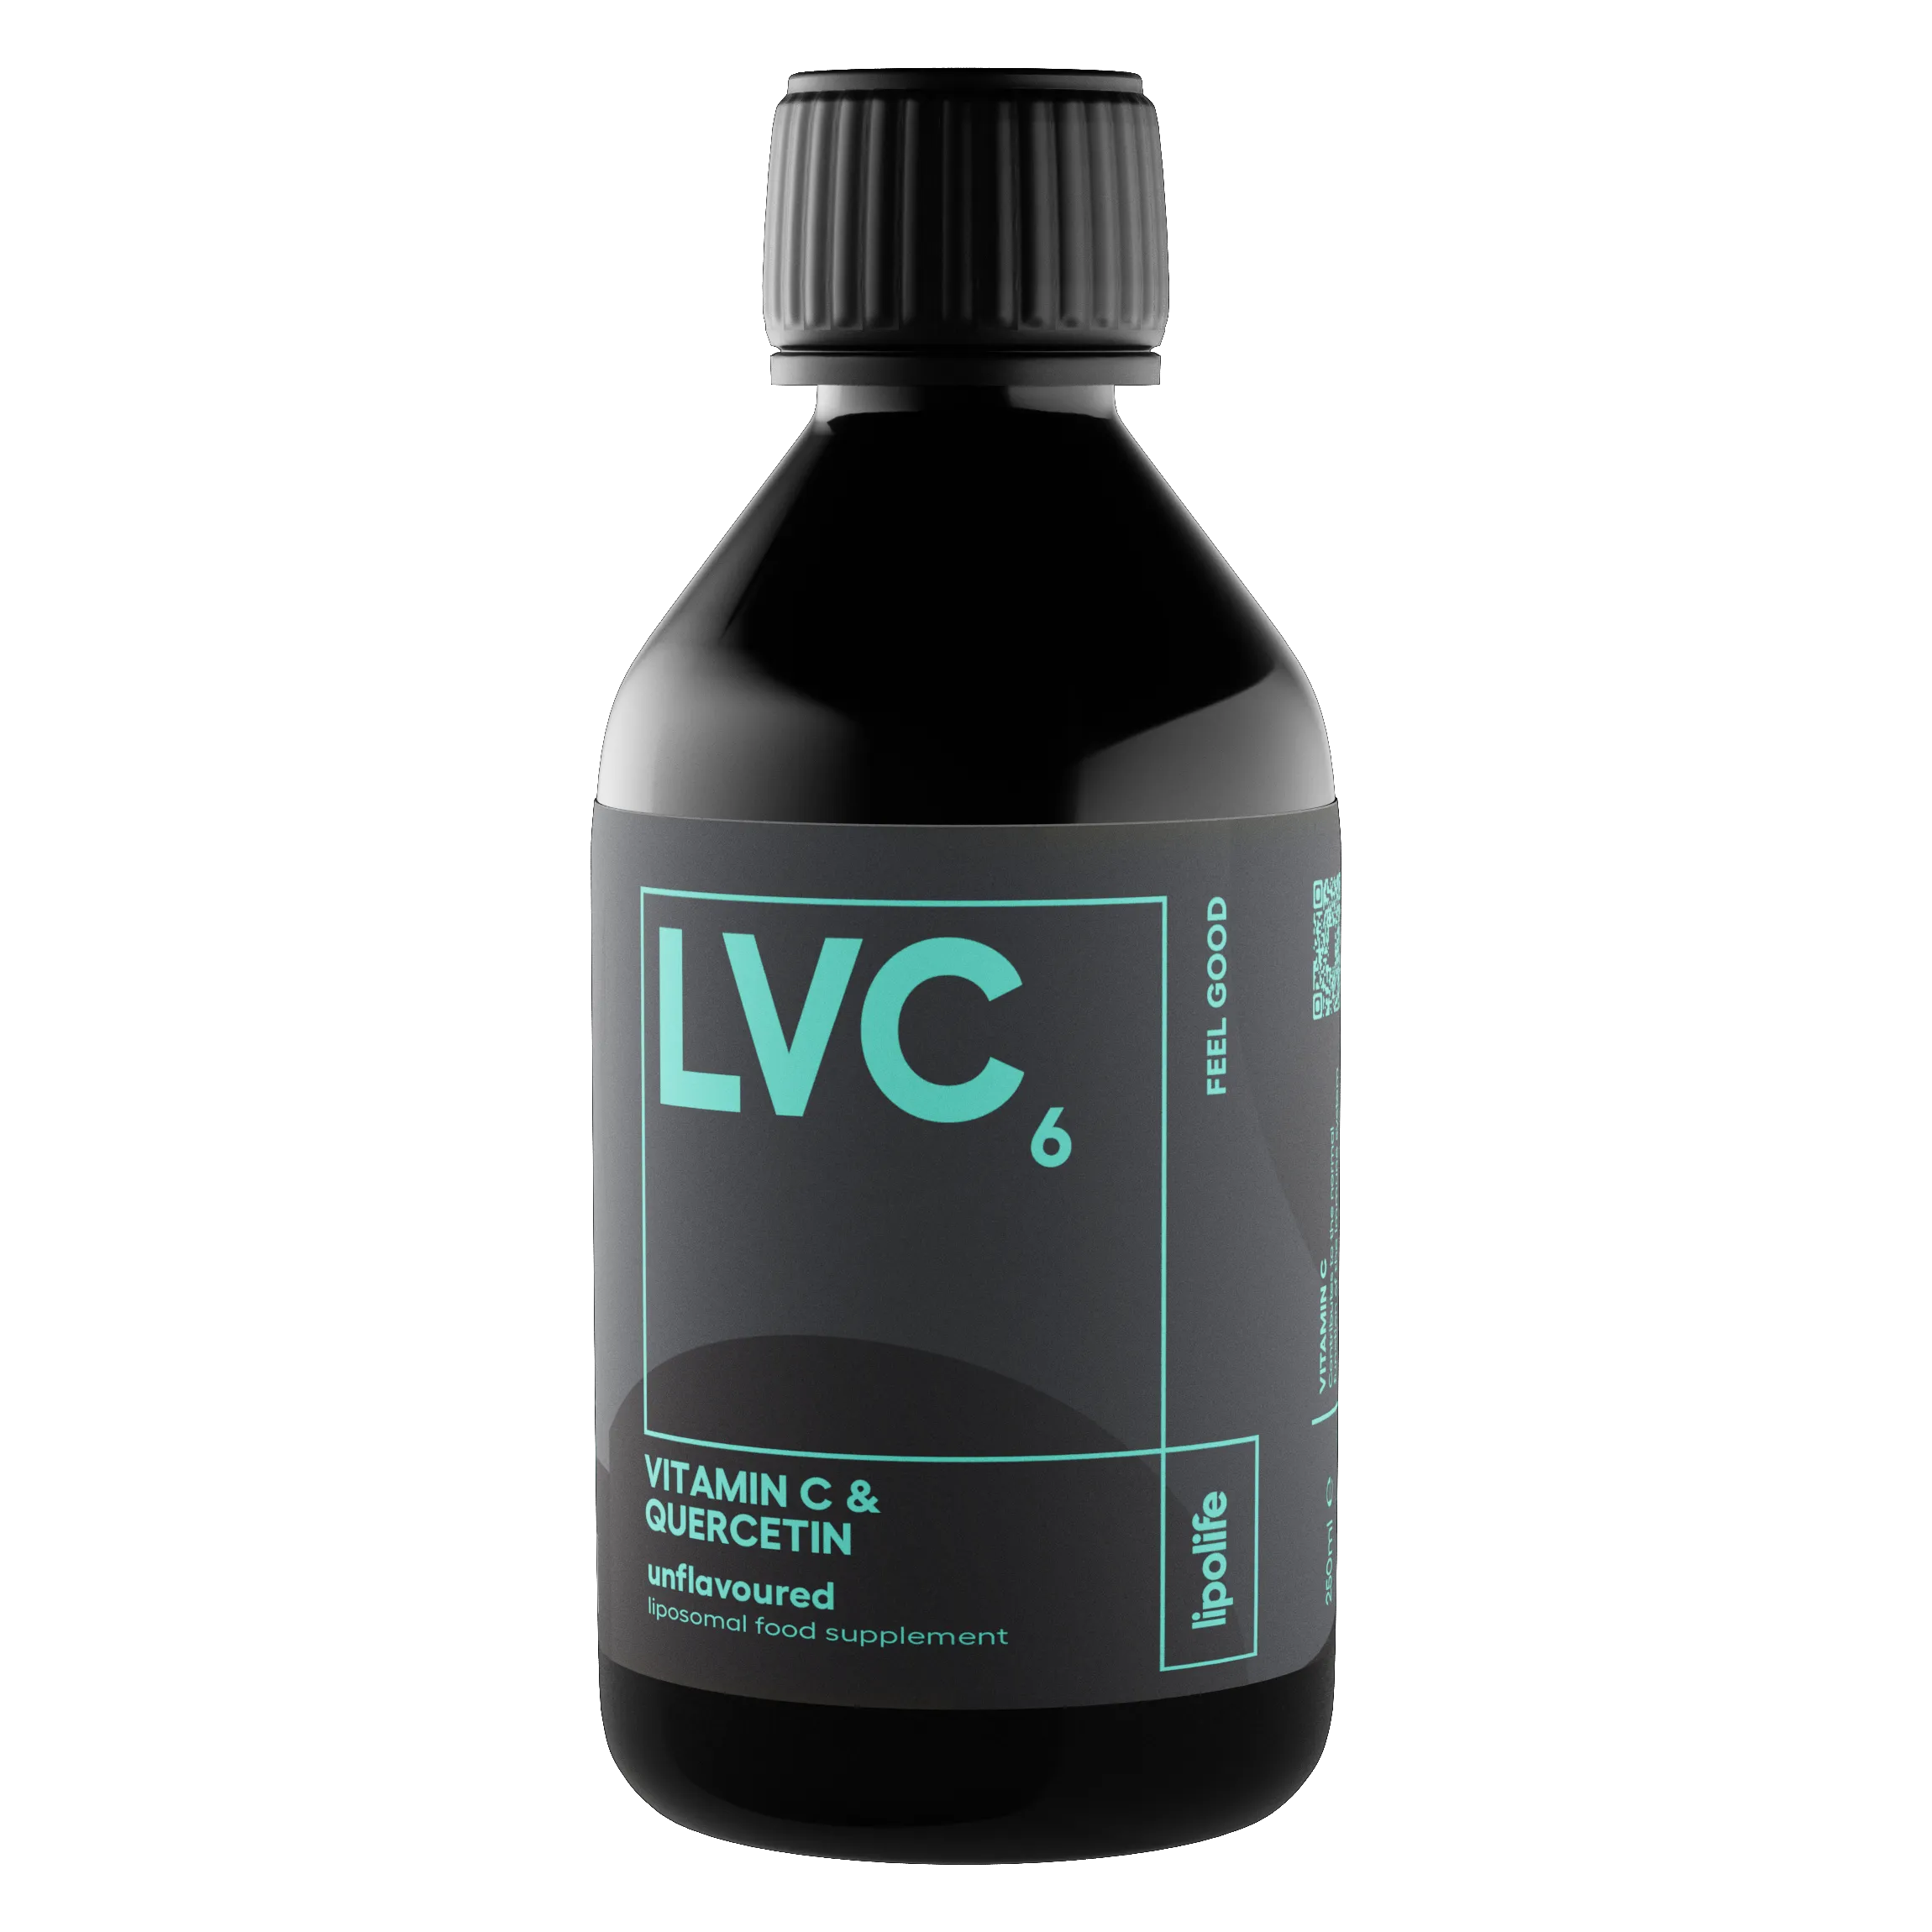 LVC6 - течен и липозомен витамин C и кверцетин, 240 мл.